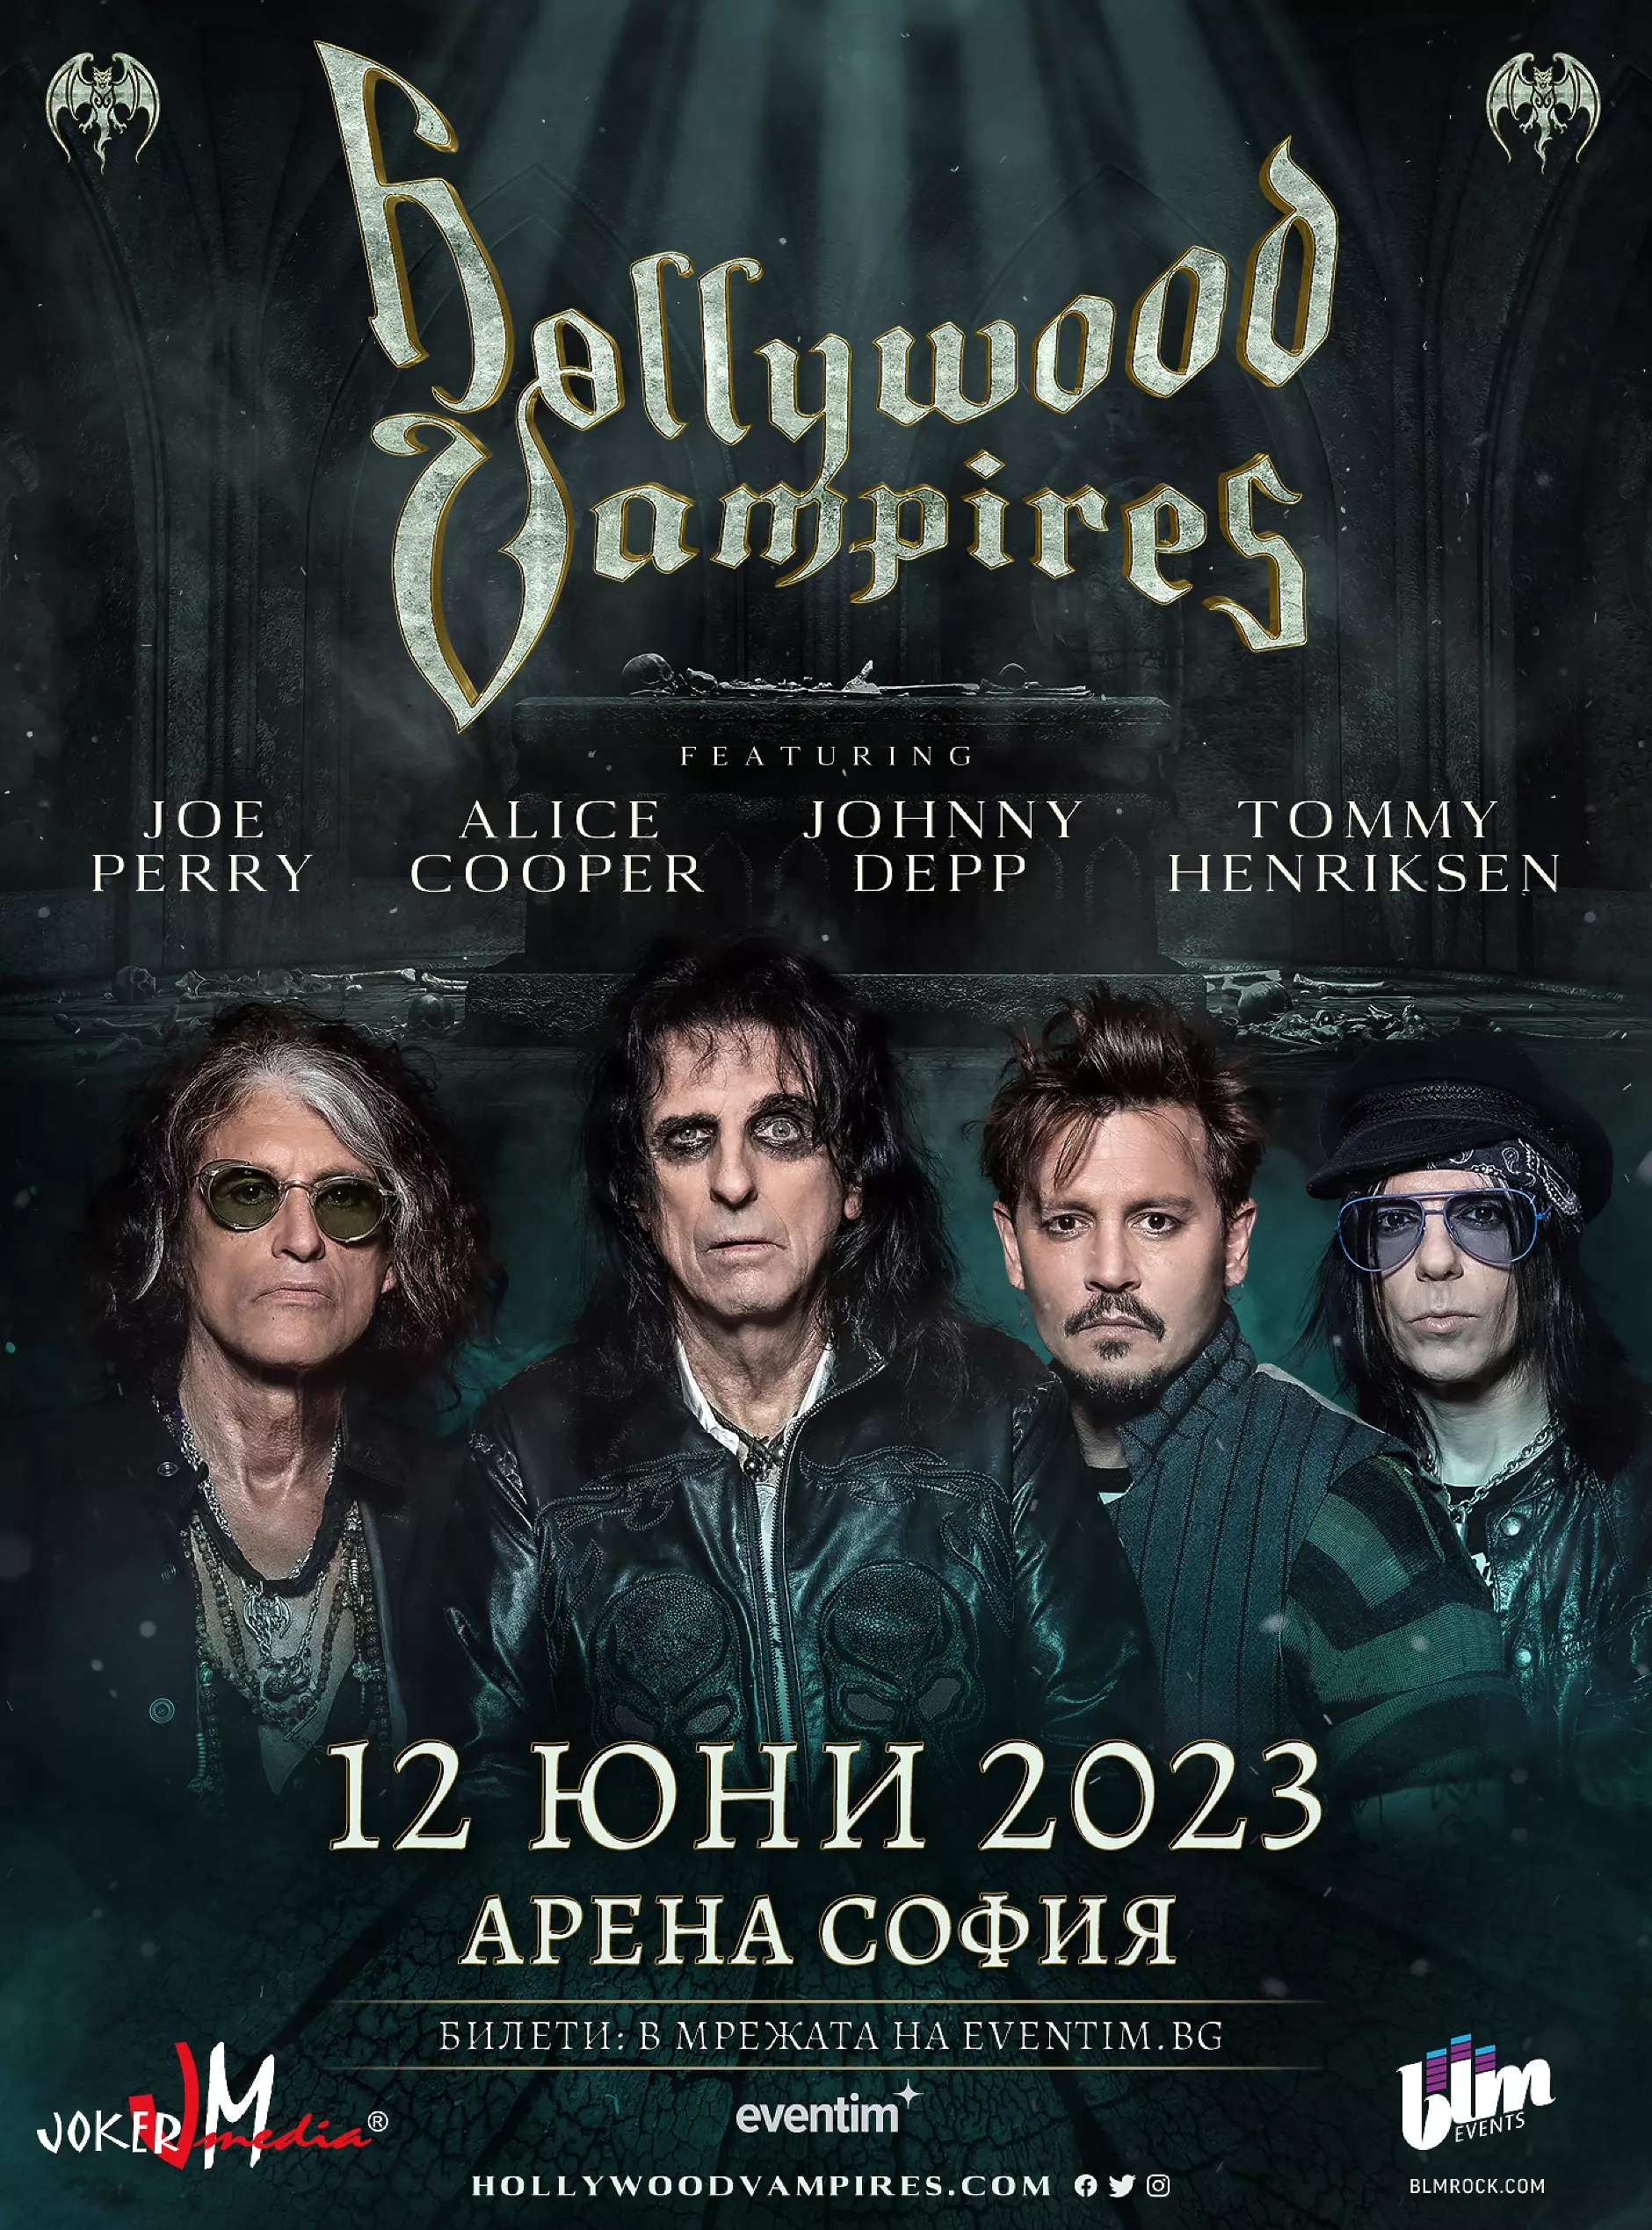 Джони Деп и Алис Купър идват за концерт в София на 12 юни